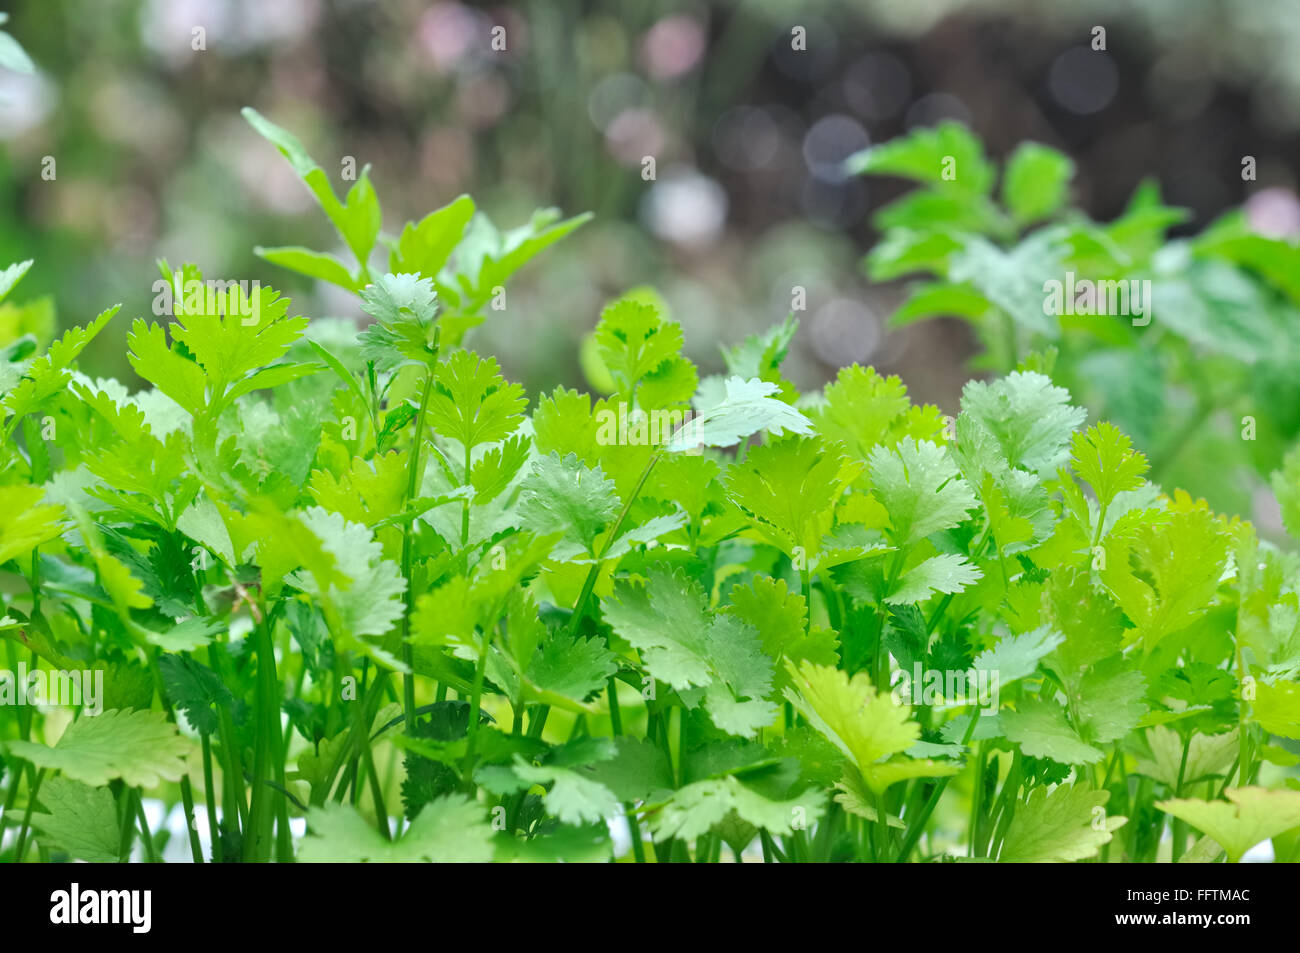 Chiudere il verde delle foglie di cerfoglio in giardino Foto Stock